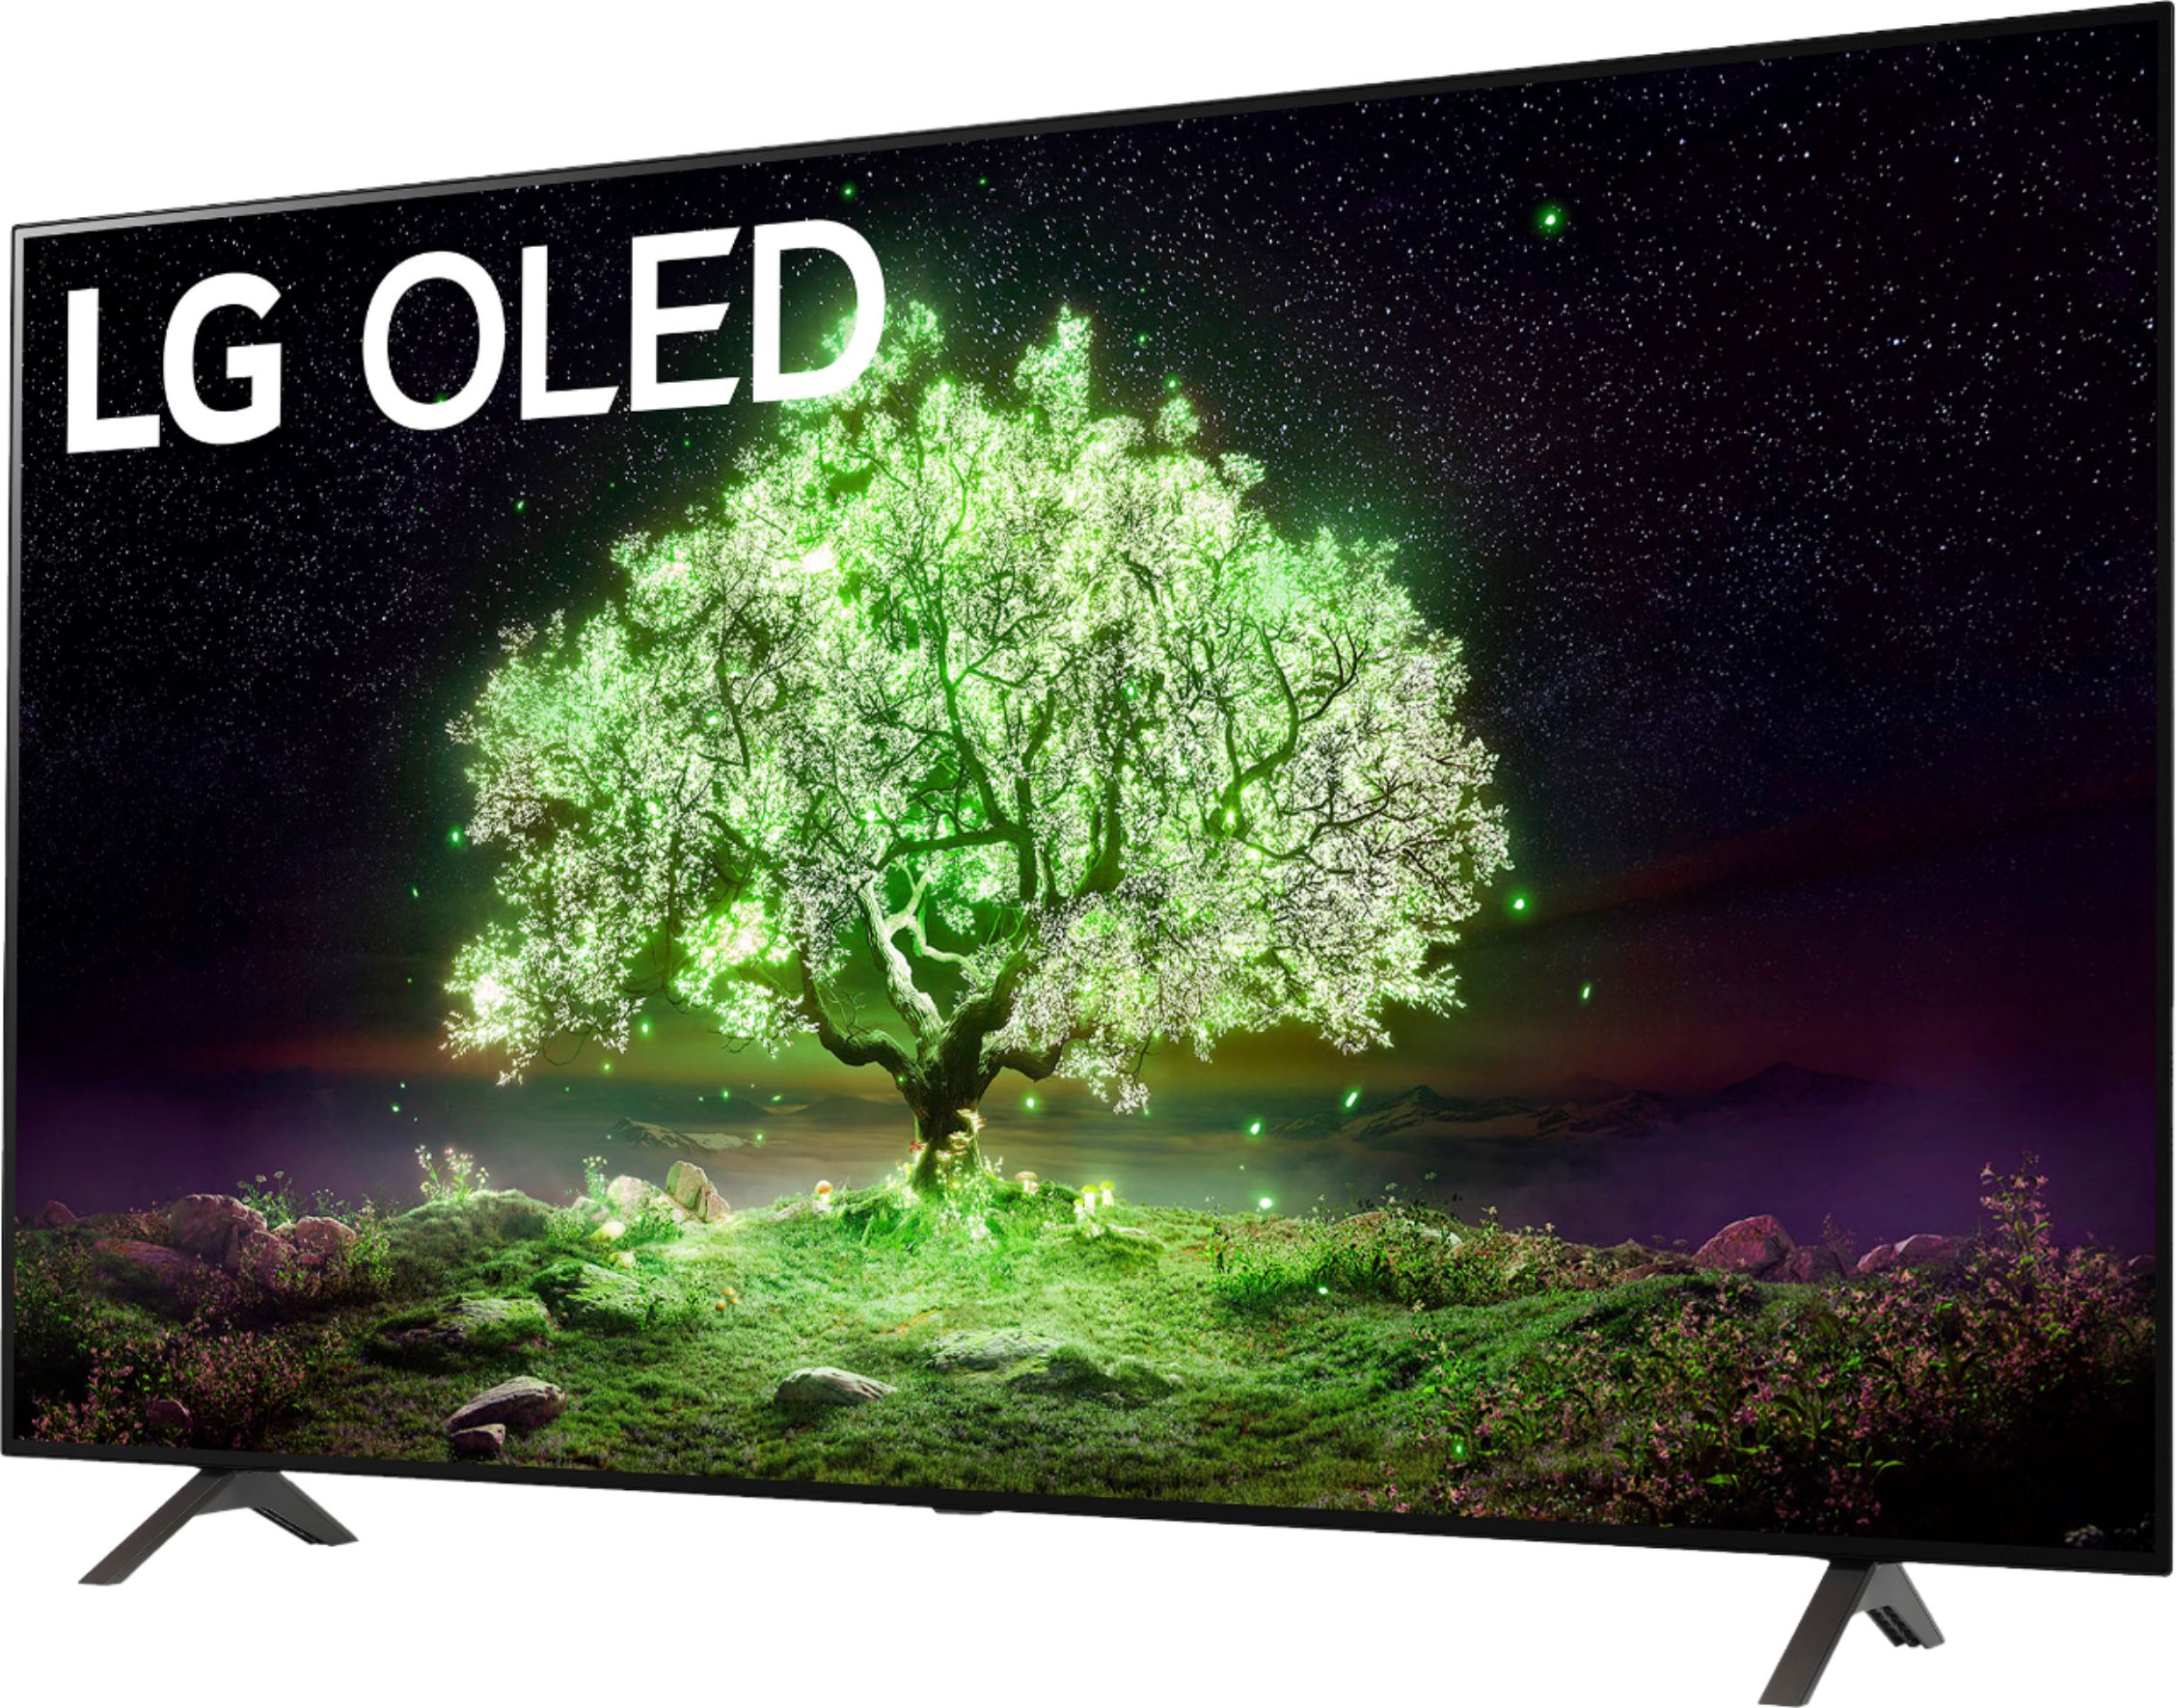 LG 65" Class A1 Series OLED 4K Smart TV OLED65A1PUA - Best Buy